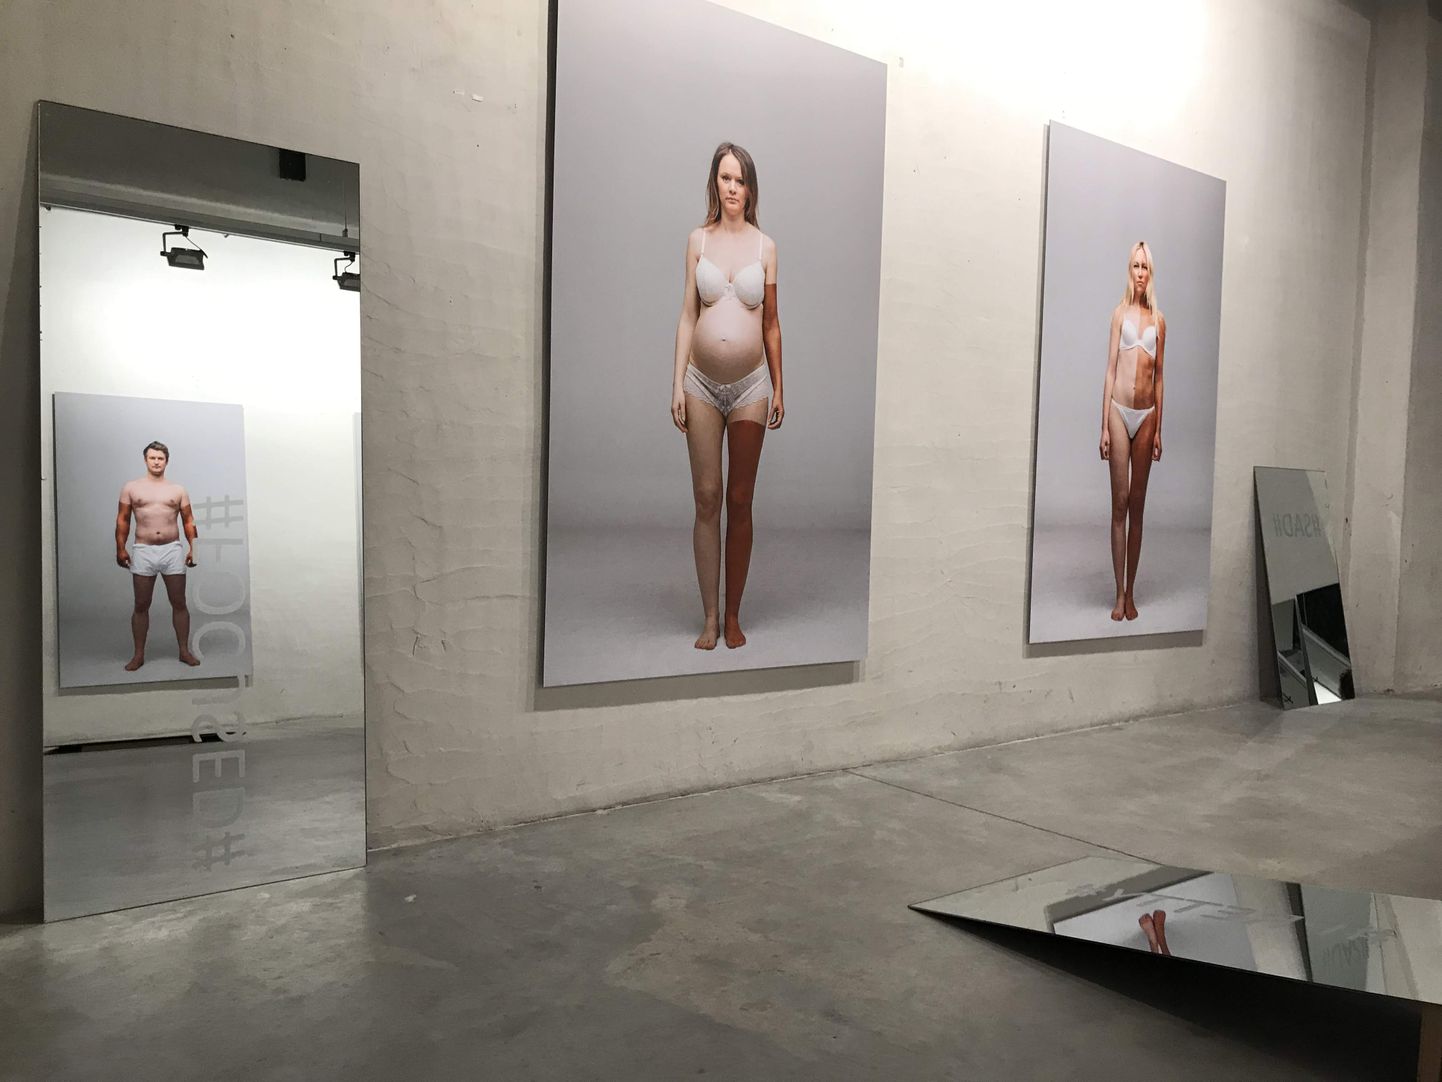 Vaade Maarit Murka näitusele “Illusioonid” ArtDepoos.